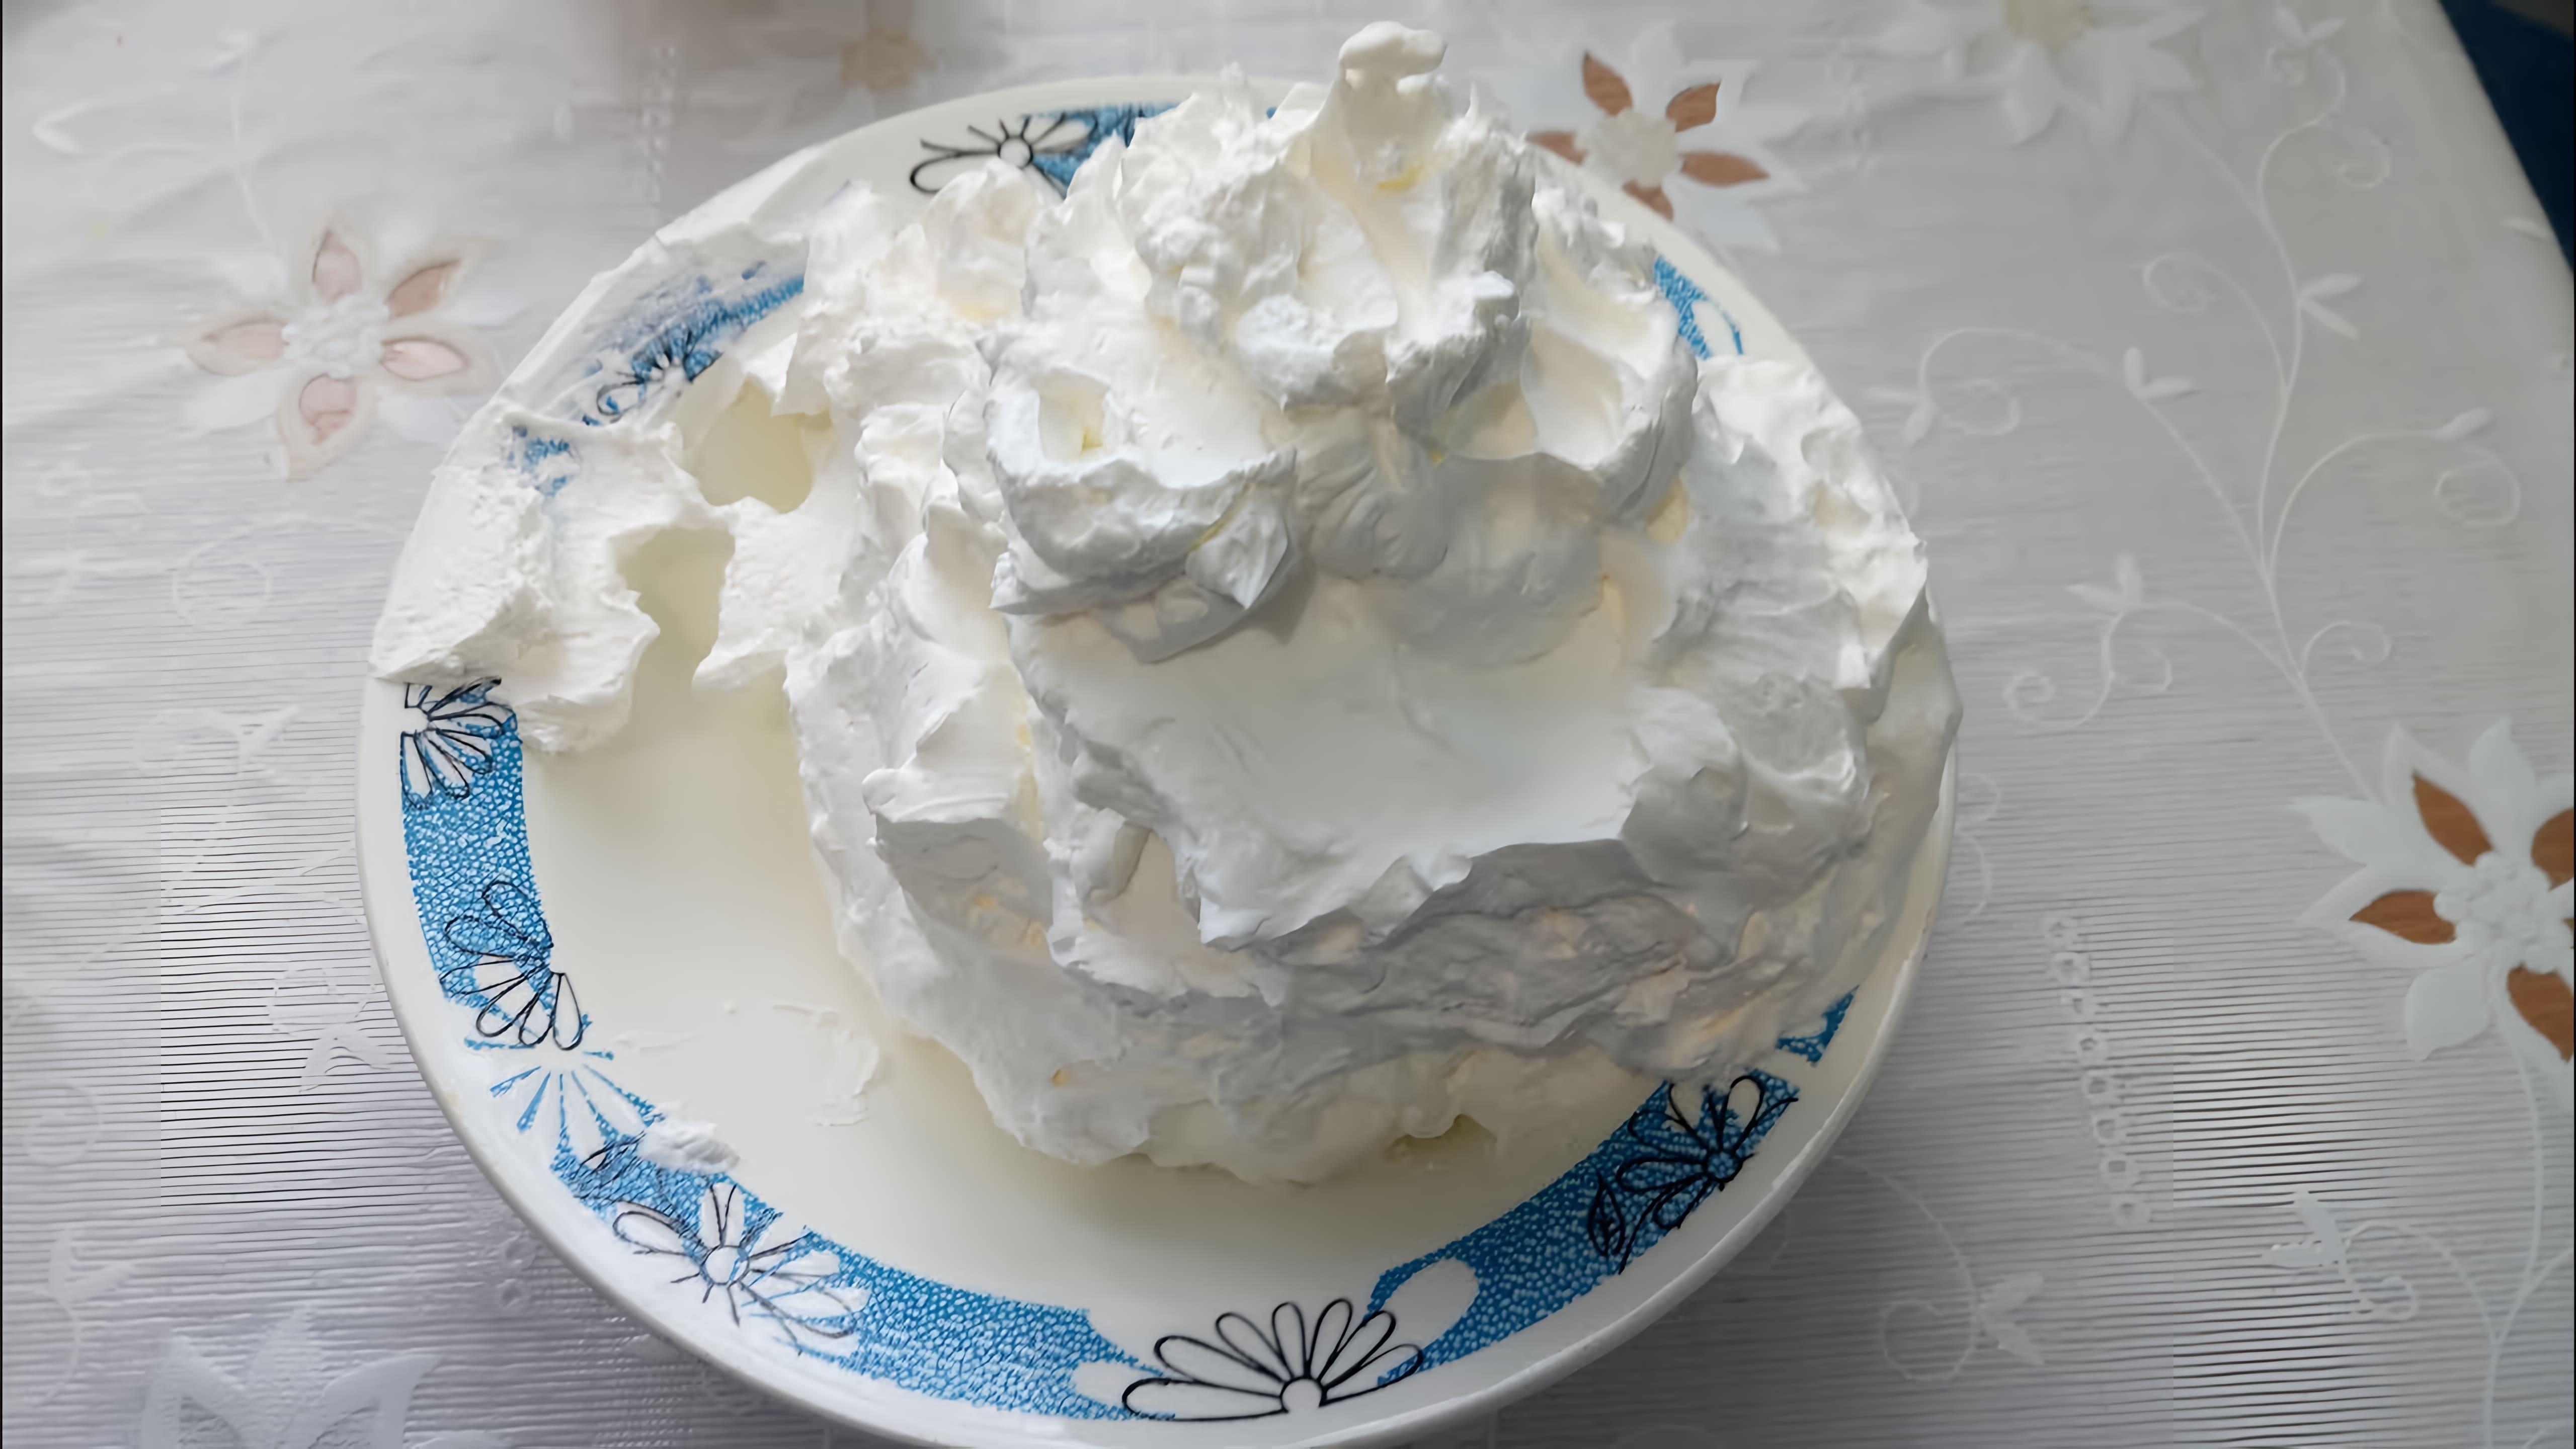 В этом видео демонстрируется использование крема "Шантипак" для приготовления тортов и других десертов